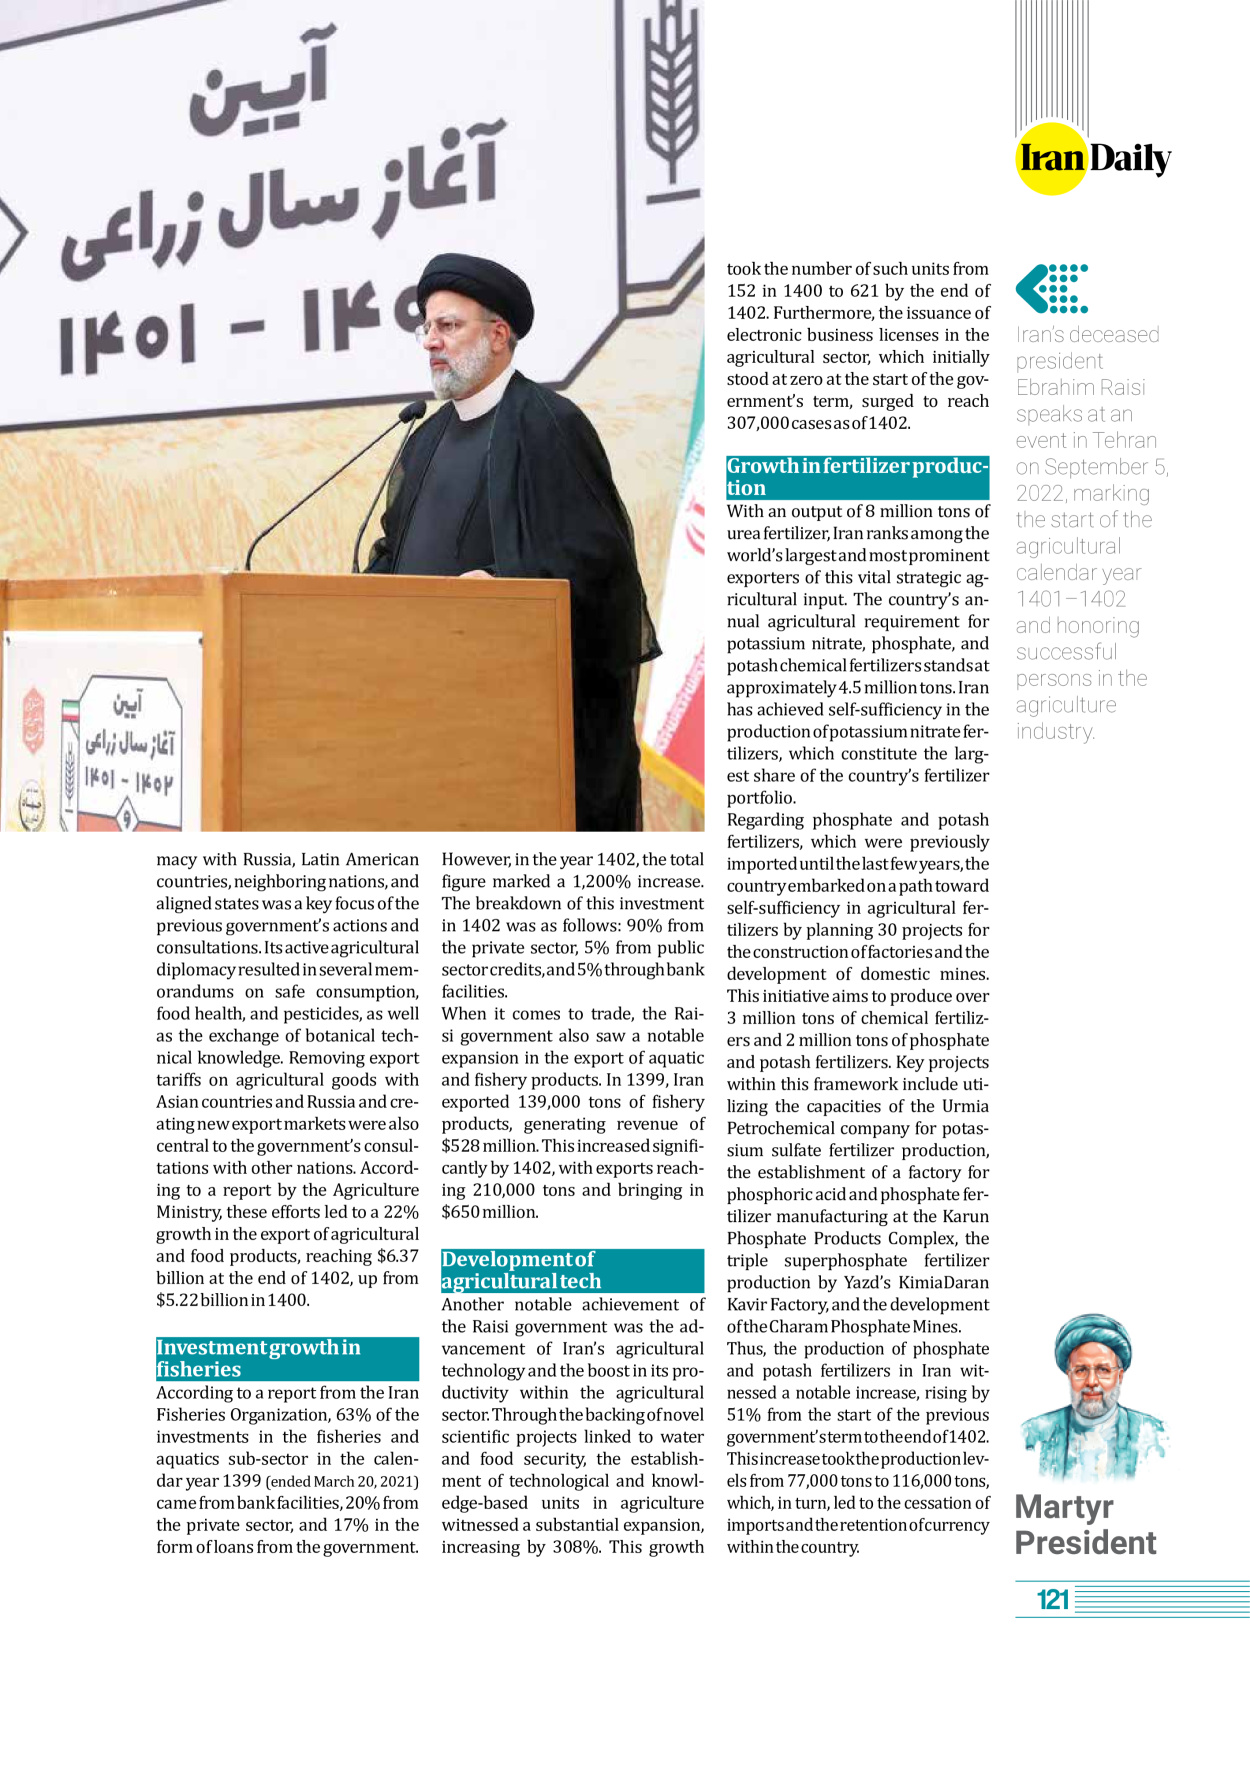 روزنامه ایران - ویژه نامه وِزه نامه چهلم شهید رییسی( انگلیسی) - ۱۷ تیر ۱۴۰۳ - صفحه ۱۲۱